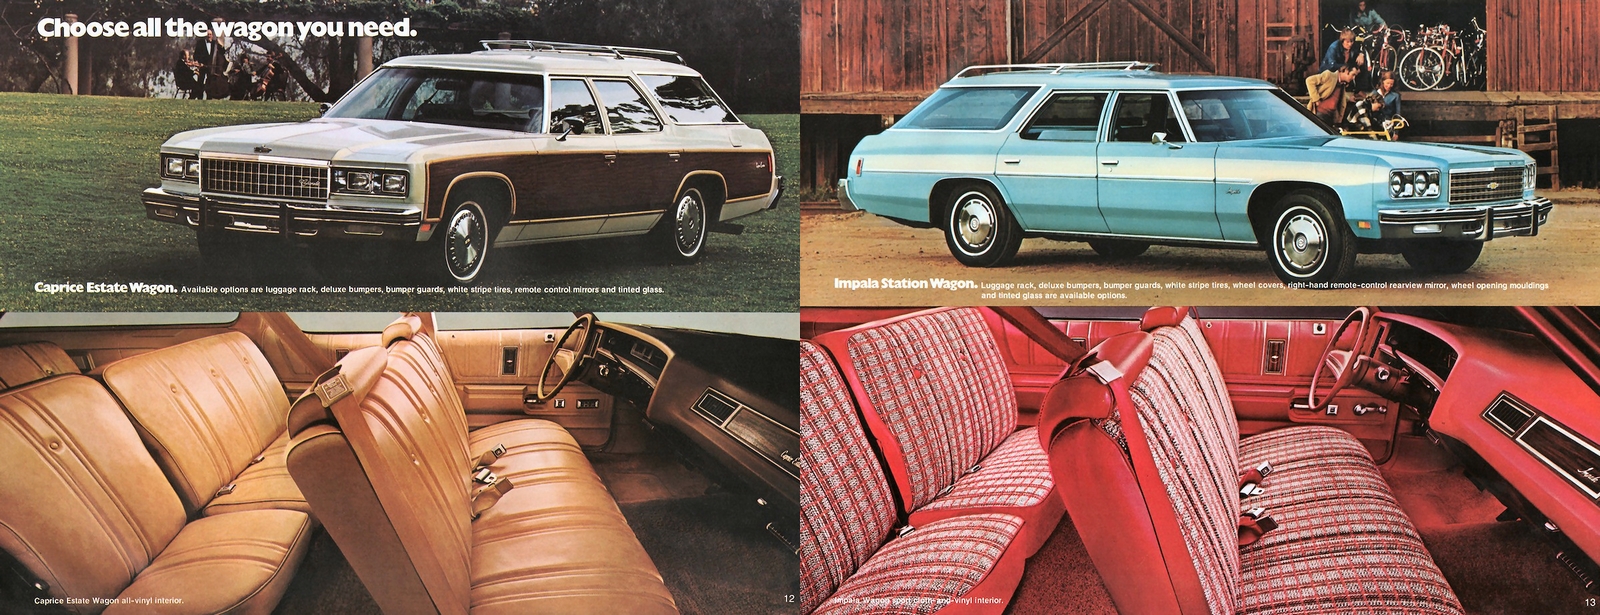 n_1976 Chevrolet Full Size (Cdn)-12-13.jpg